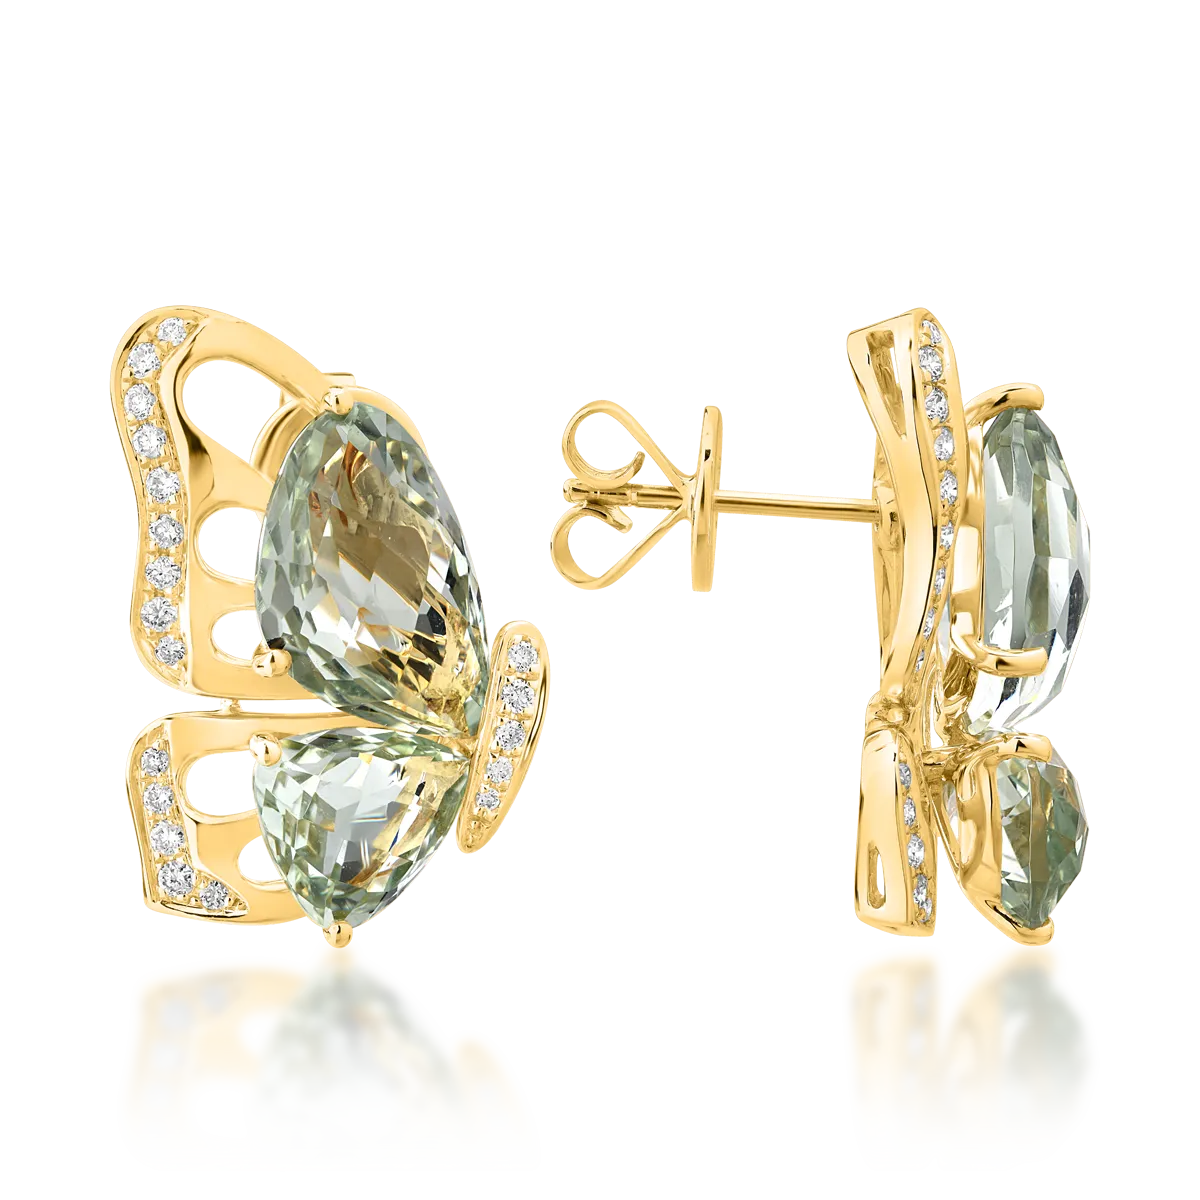 Cercei fluture din aur galben de 18K cu ametiste verzi de 7.7ct si diamante de 0.28ct